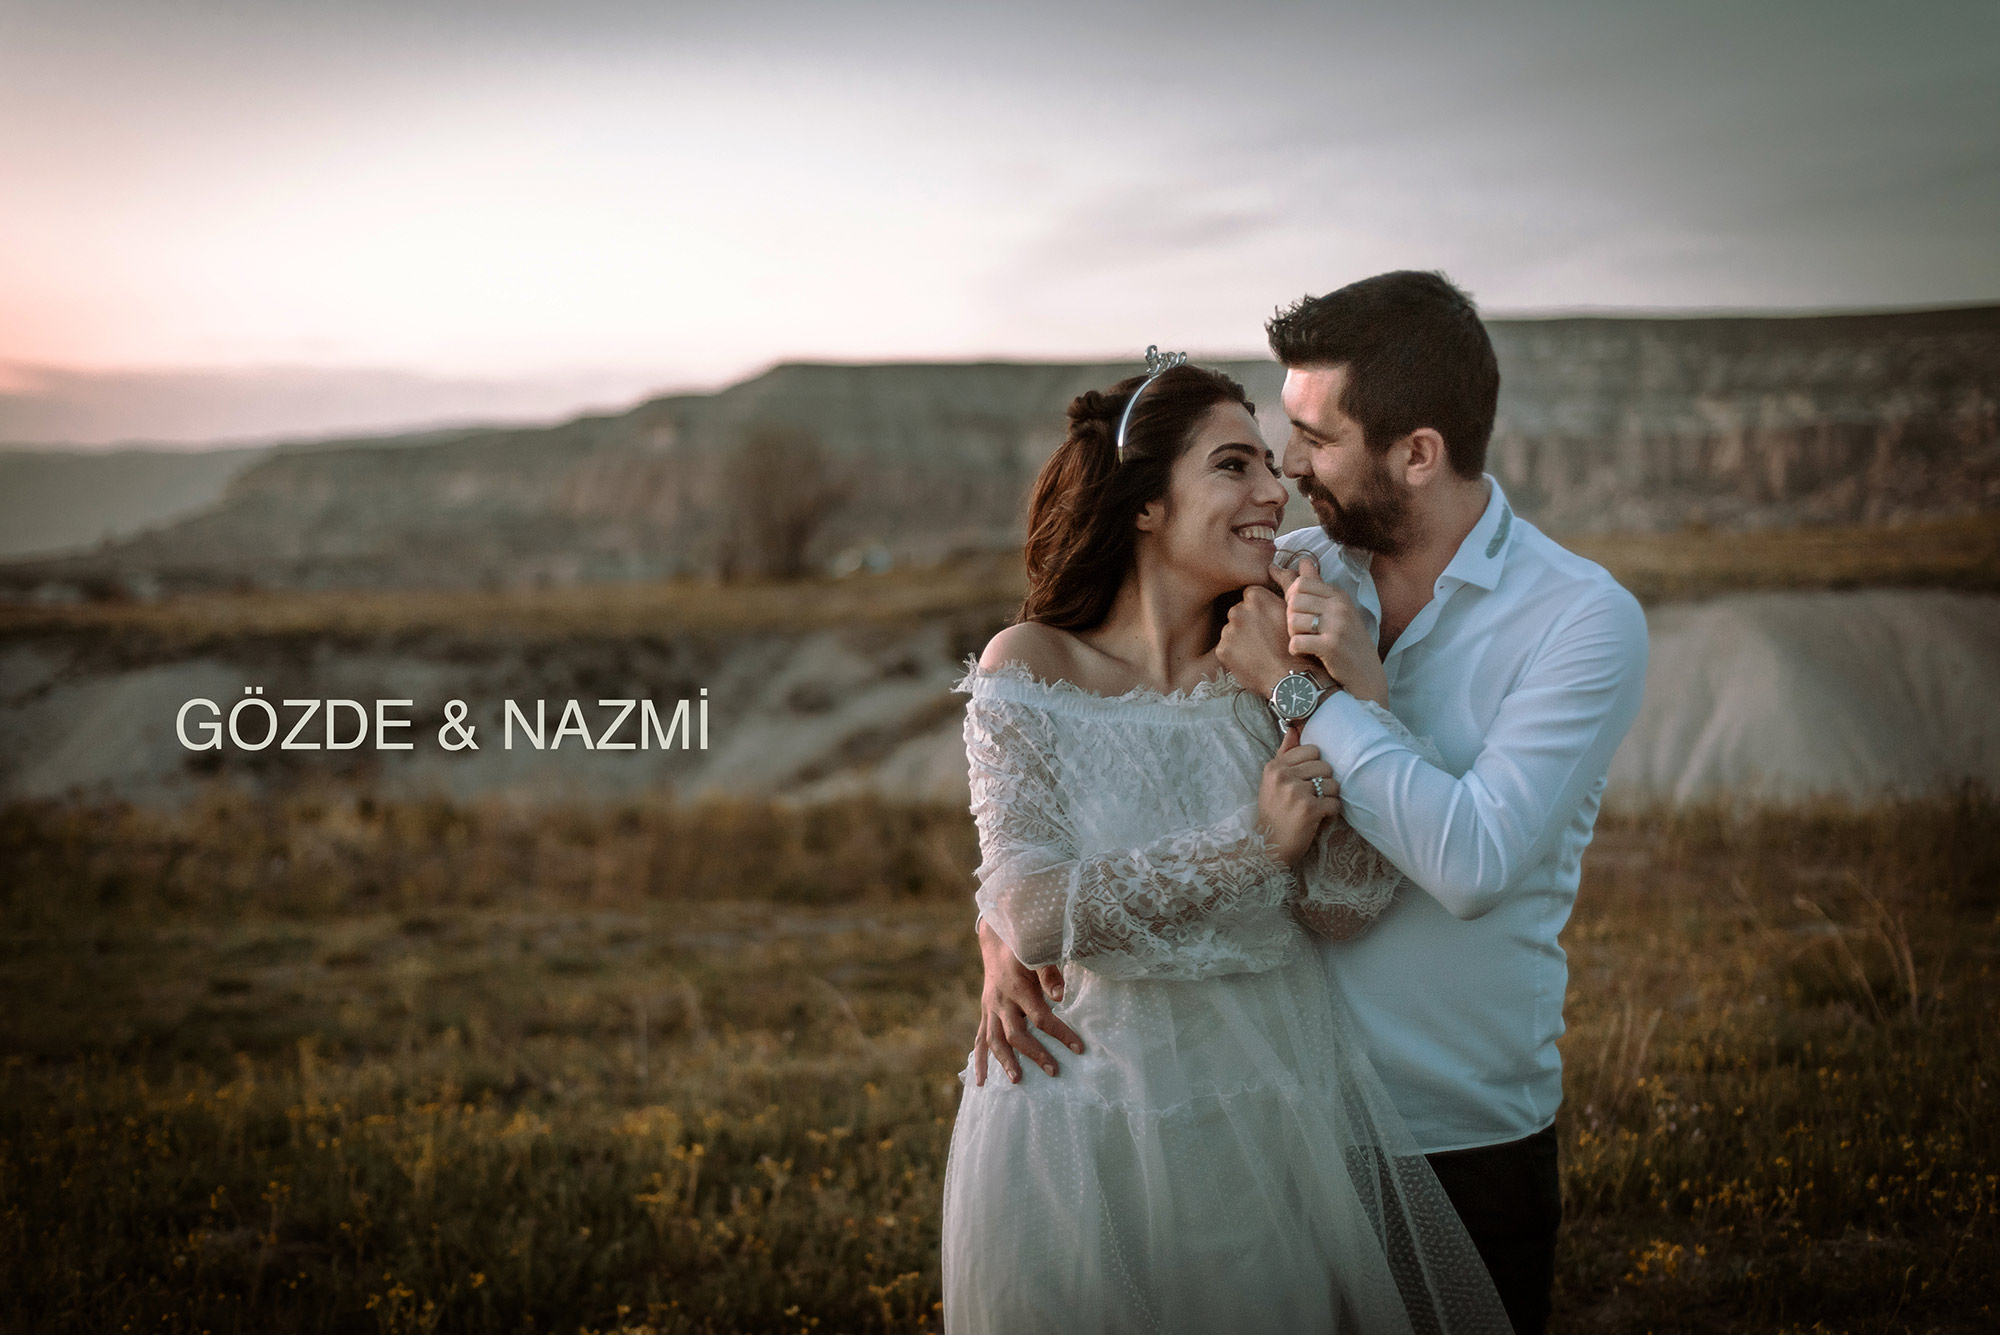 Gzde & Nazmi